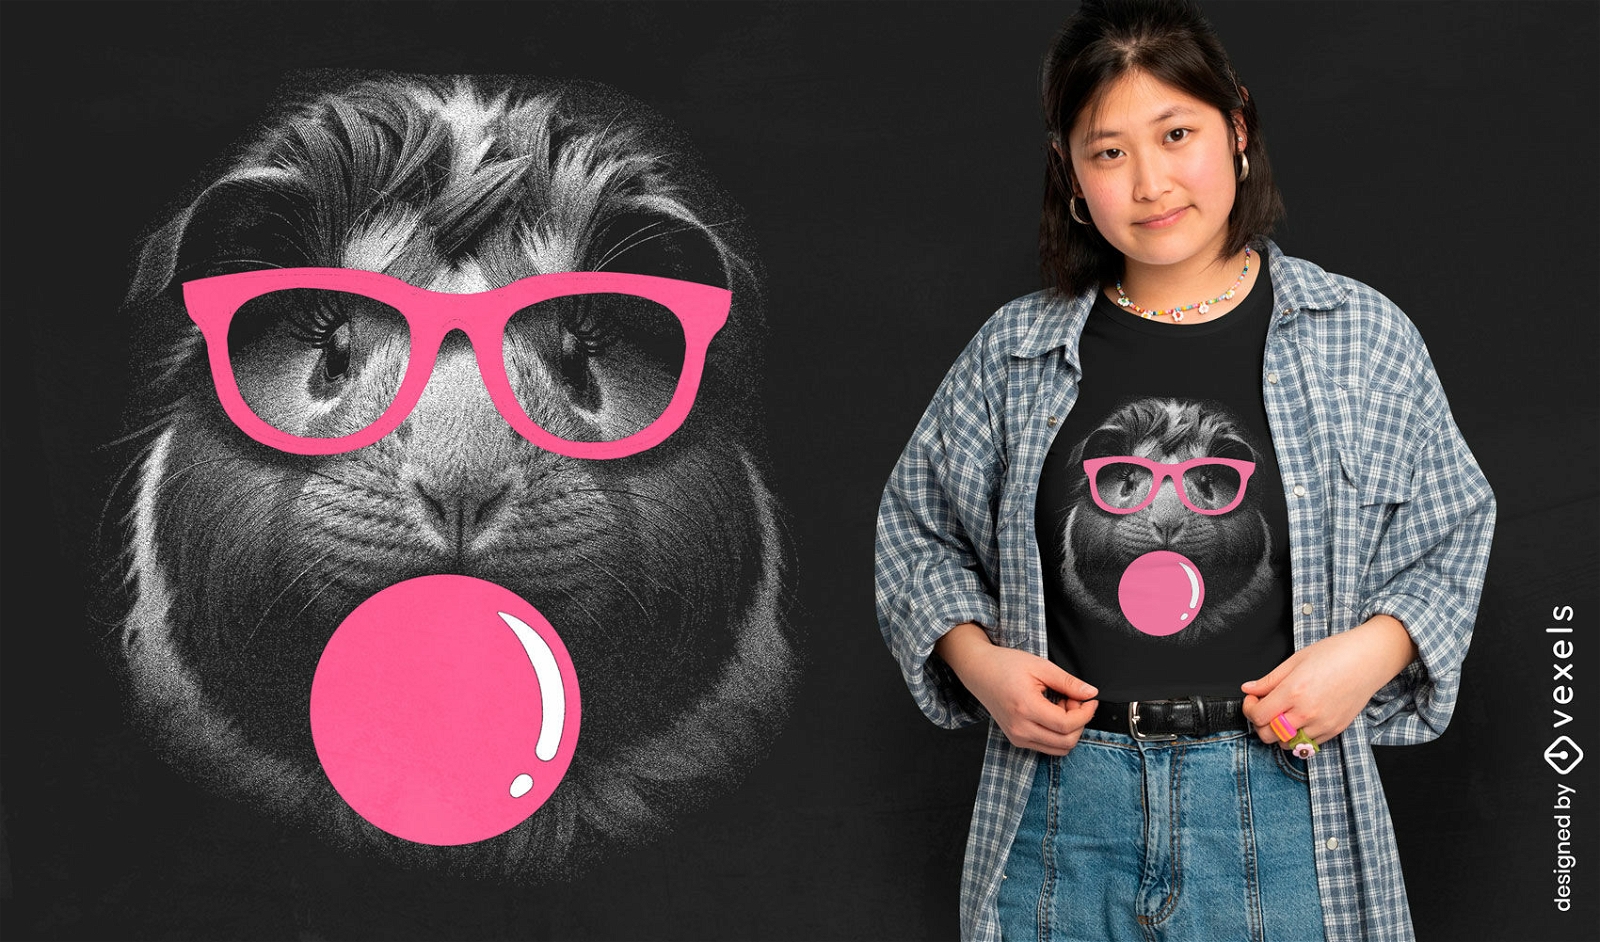 Quirky guinea pig t-shirt design